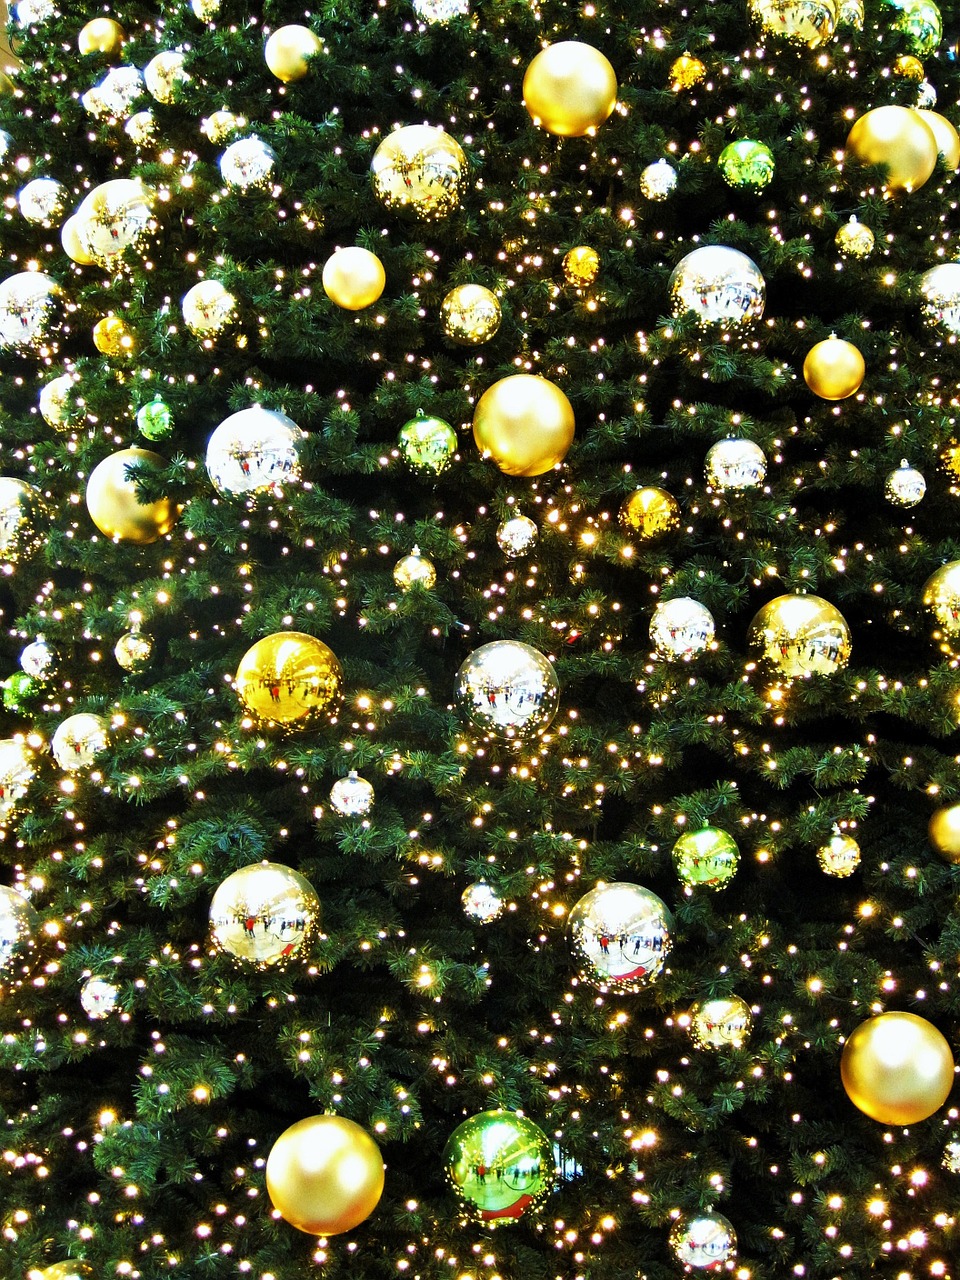 Auksinė Eglė, Auksinė Kalėdų Eglutė, Adventas, Adventlich, Auksas, Rutulys, Eglutė, Dalinis Žvilgsnis Į Eglutę Su Keptuvėmis, Kalėdos, Kalėdų Atmosfera